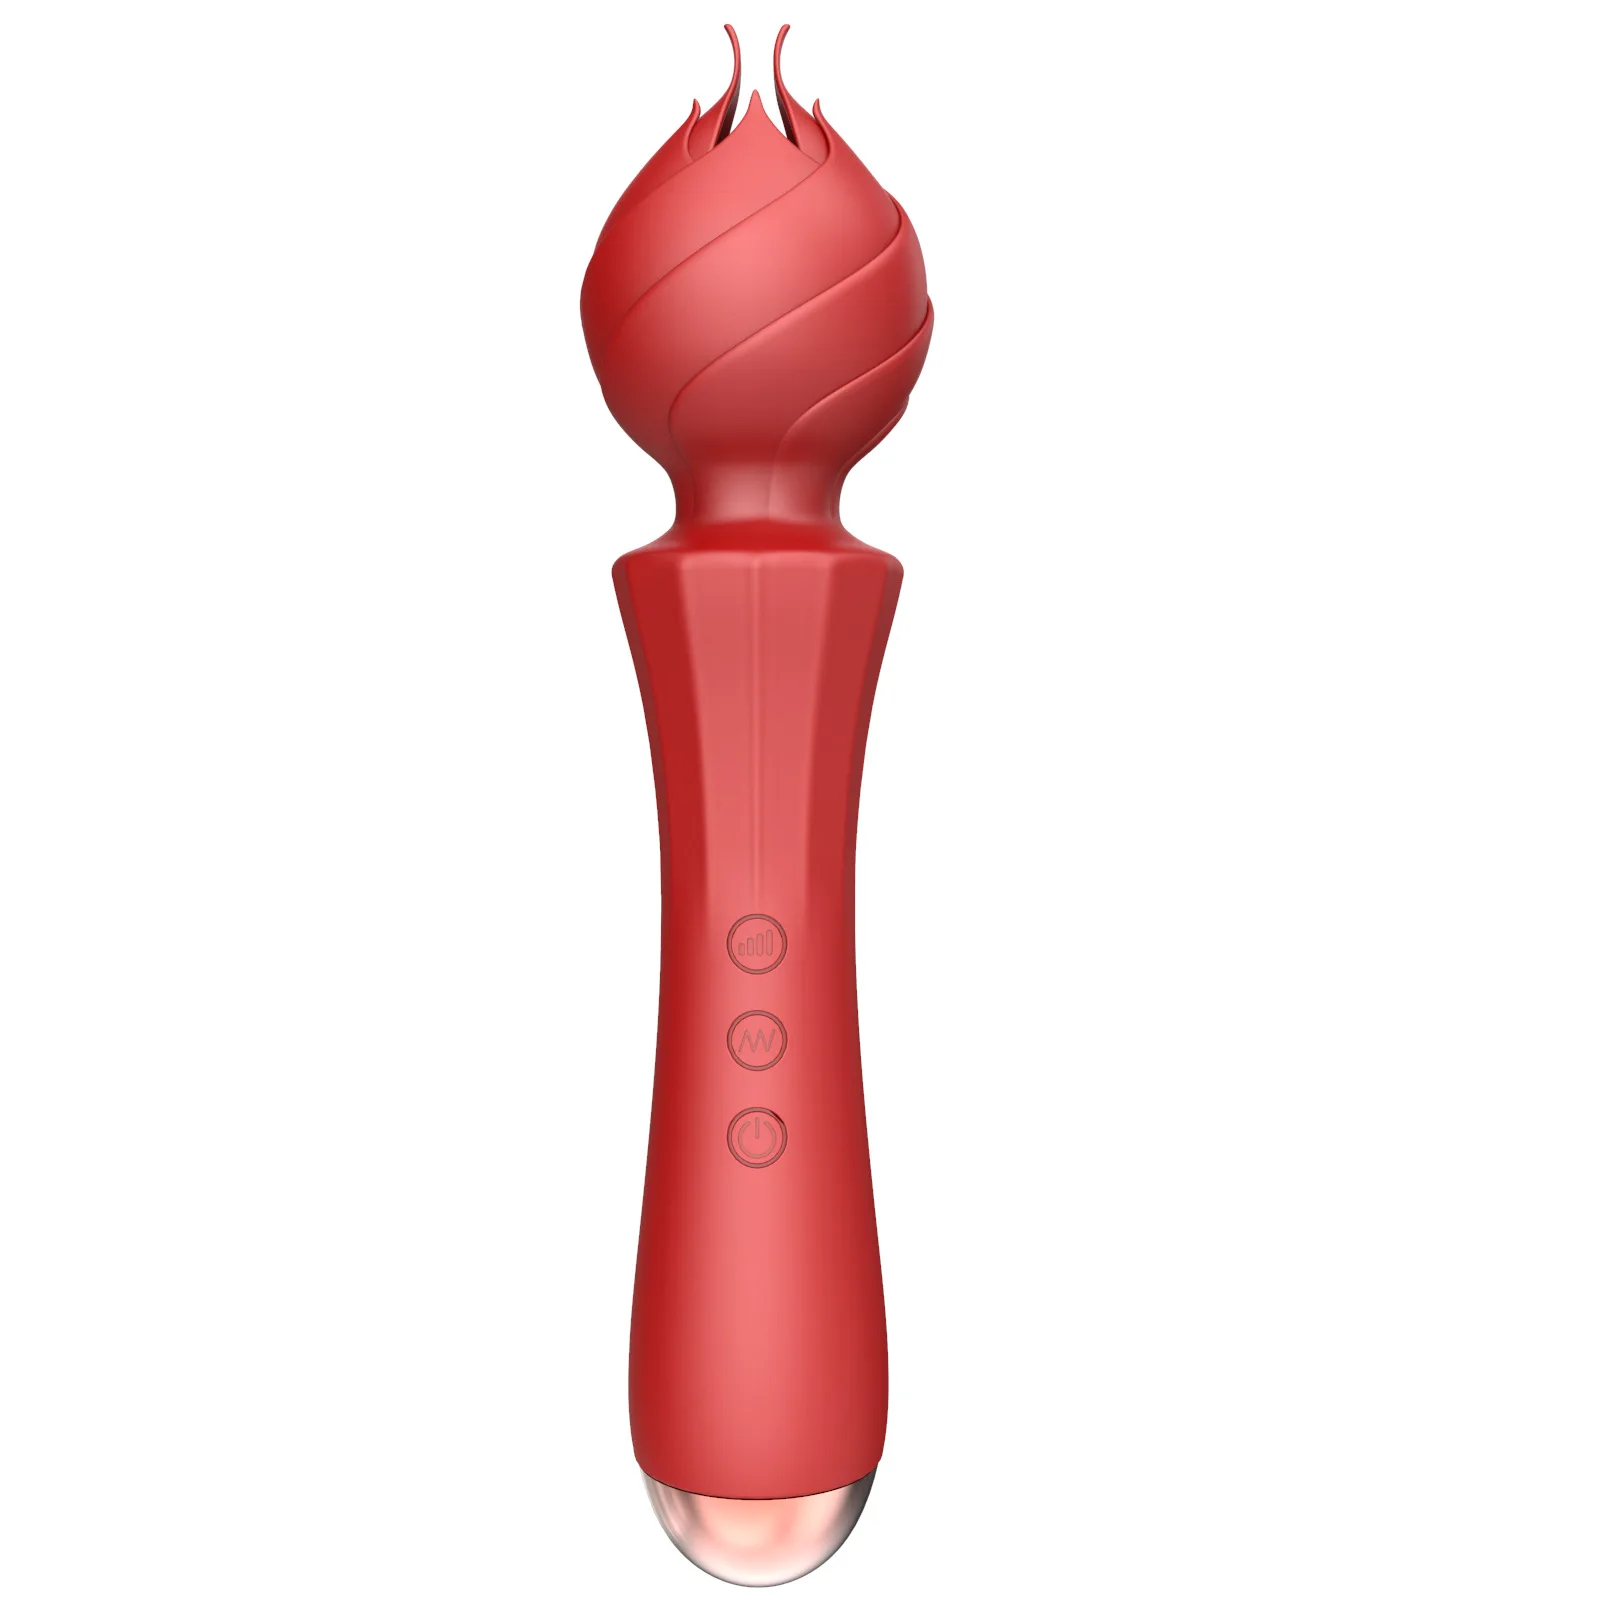 Klitoral Emme Üfleme Vibratör 20 Yoğunluk Modları Kadınlar için Seks Oyuncak Klitoris Meme Emme Stimülatörü Çiftler veya Solo